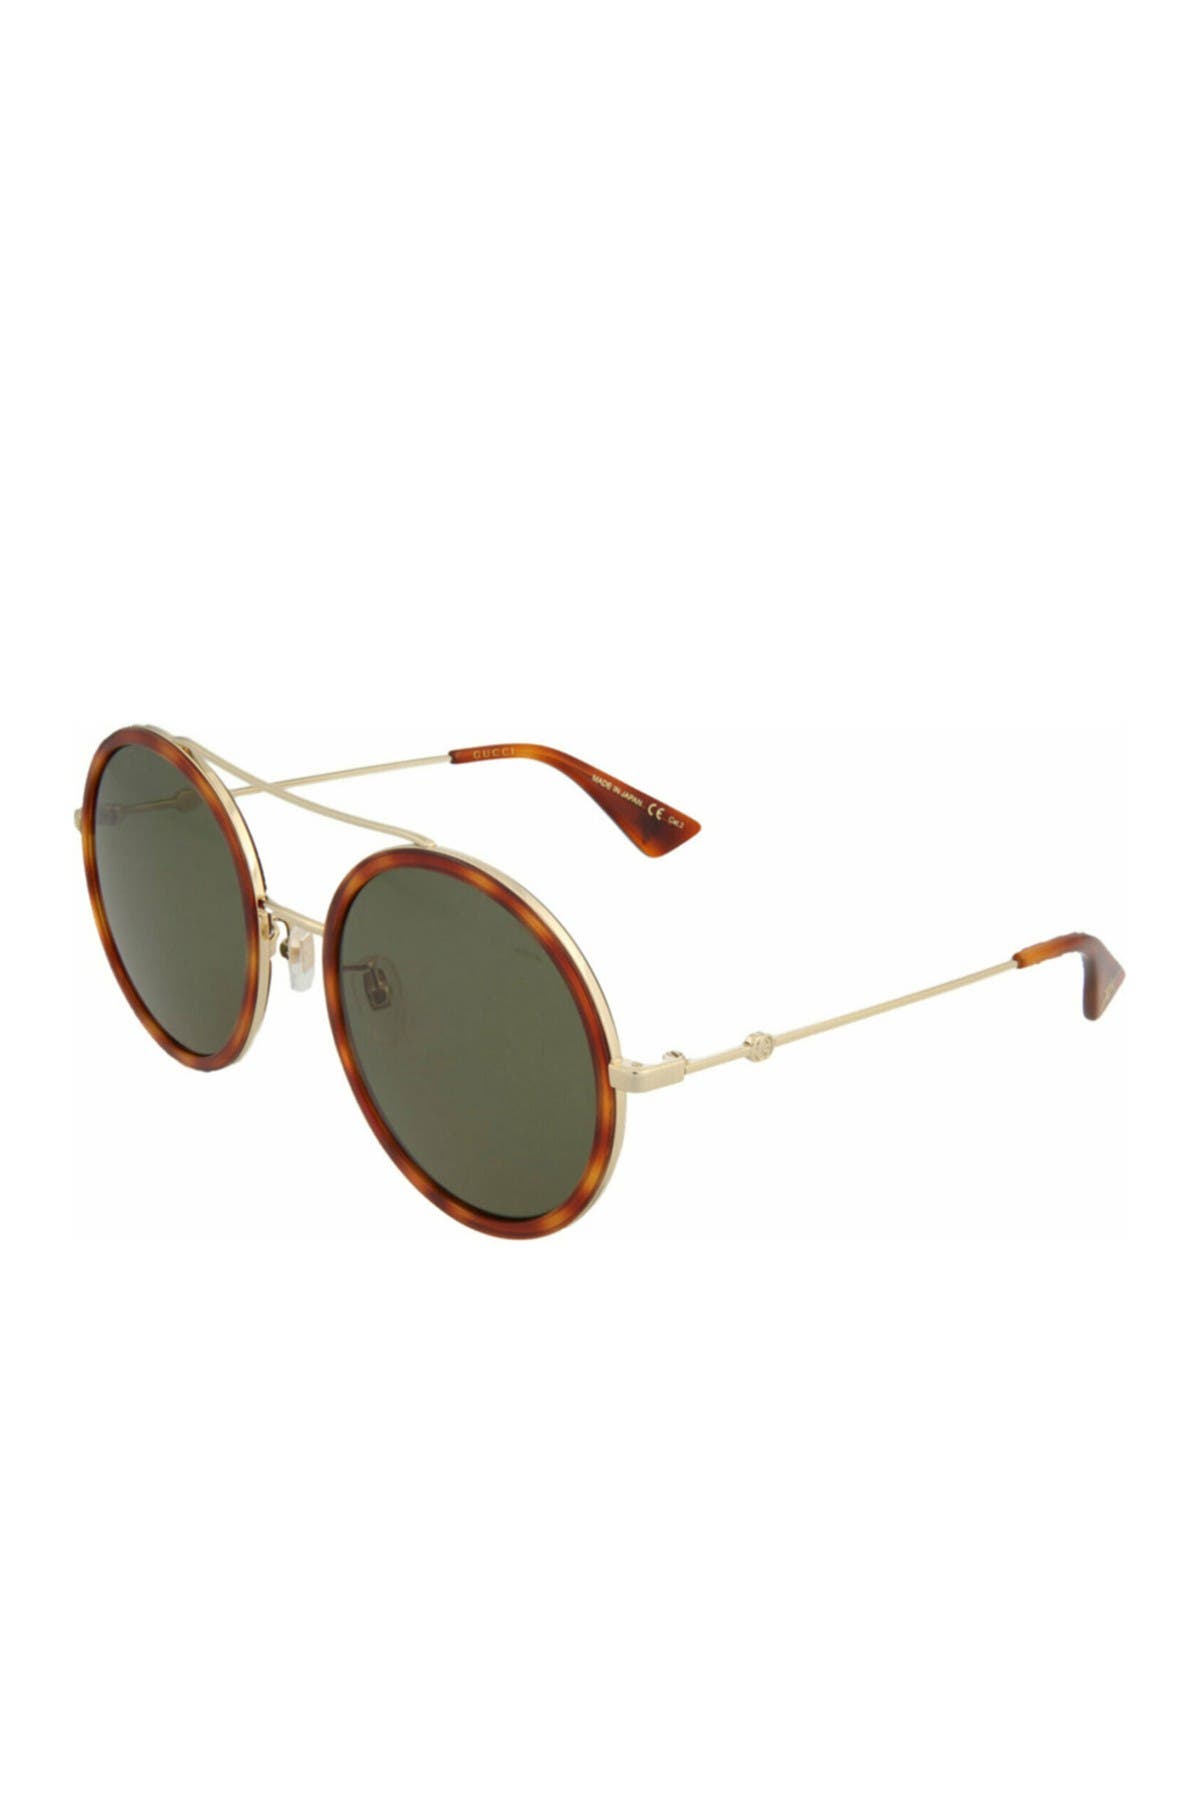 Gucci 56mm Fashion Round Sunglasses In Gold